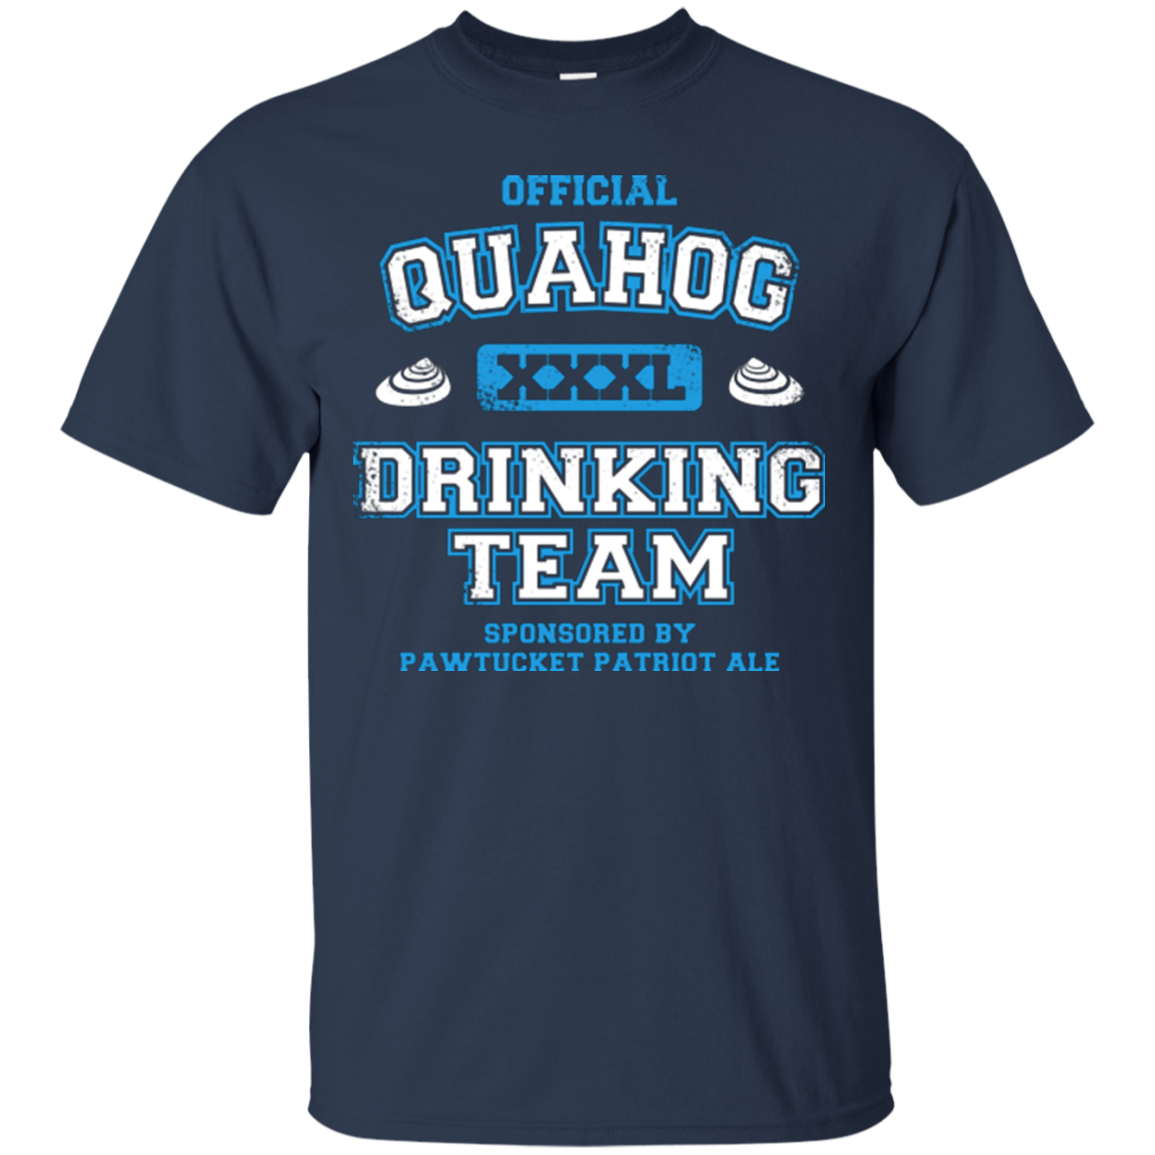 Quahog Drinking Team T-Shirt